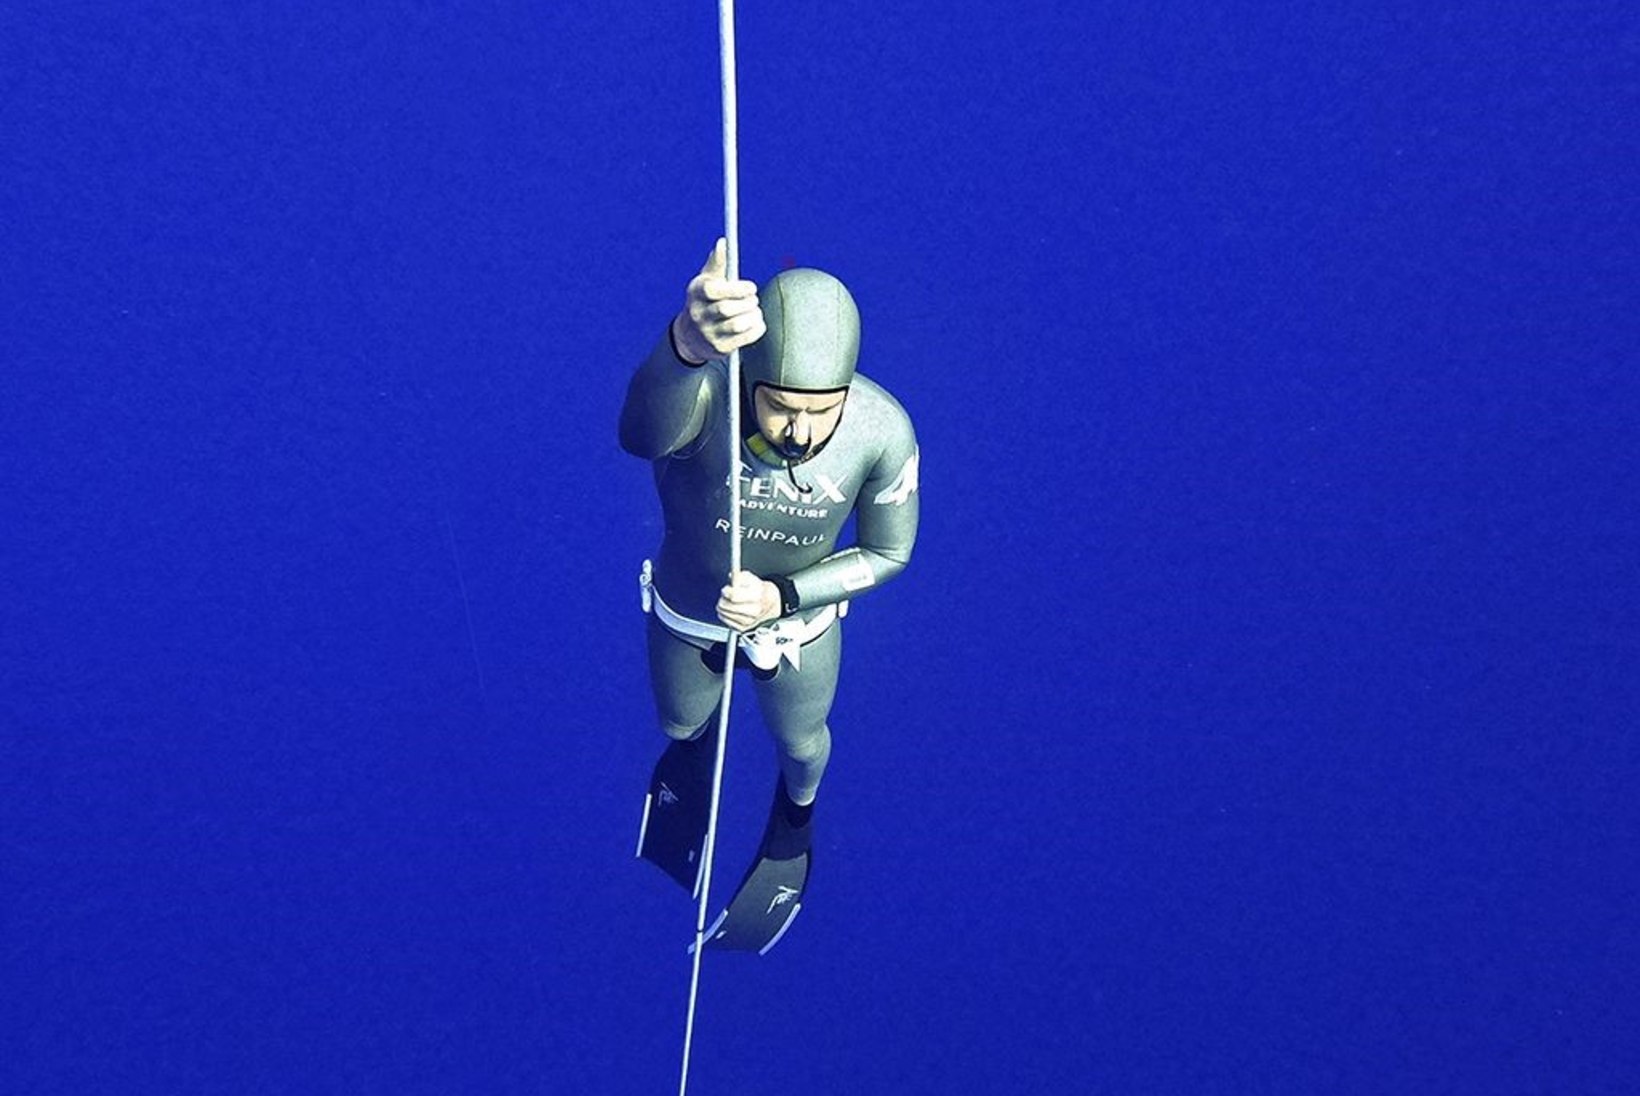 FOTOD | VÕIMAS! Eestlane sukeldus ühe hingetõmbega 101 meetri sügavusele